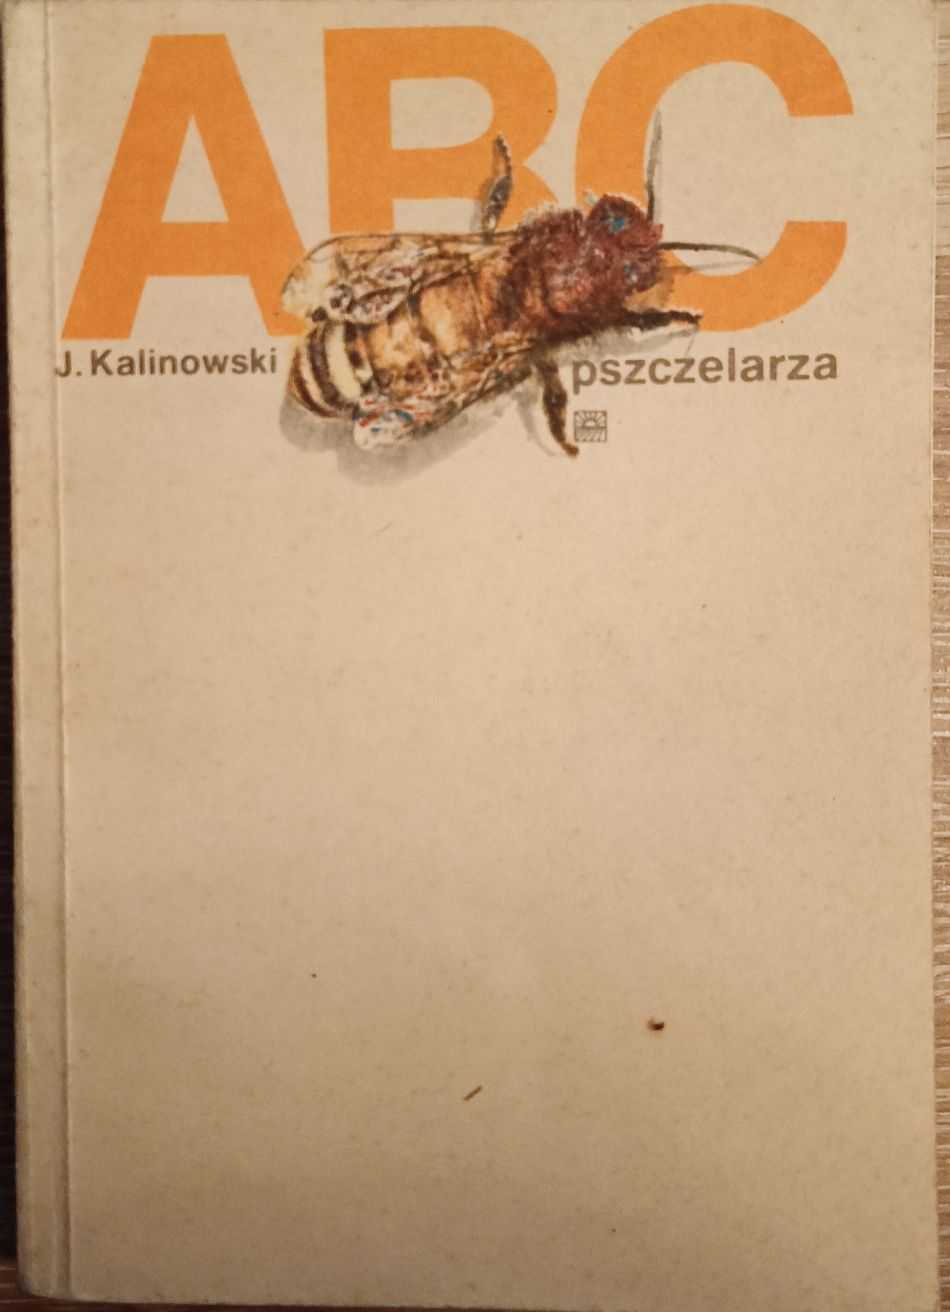 ABC pszczelarza " J.Kalinowski